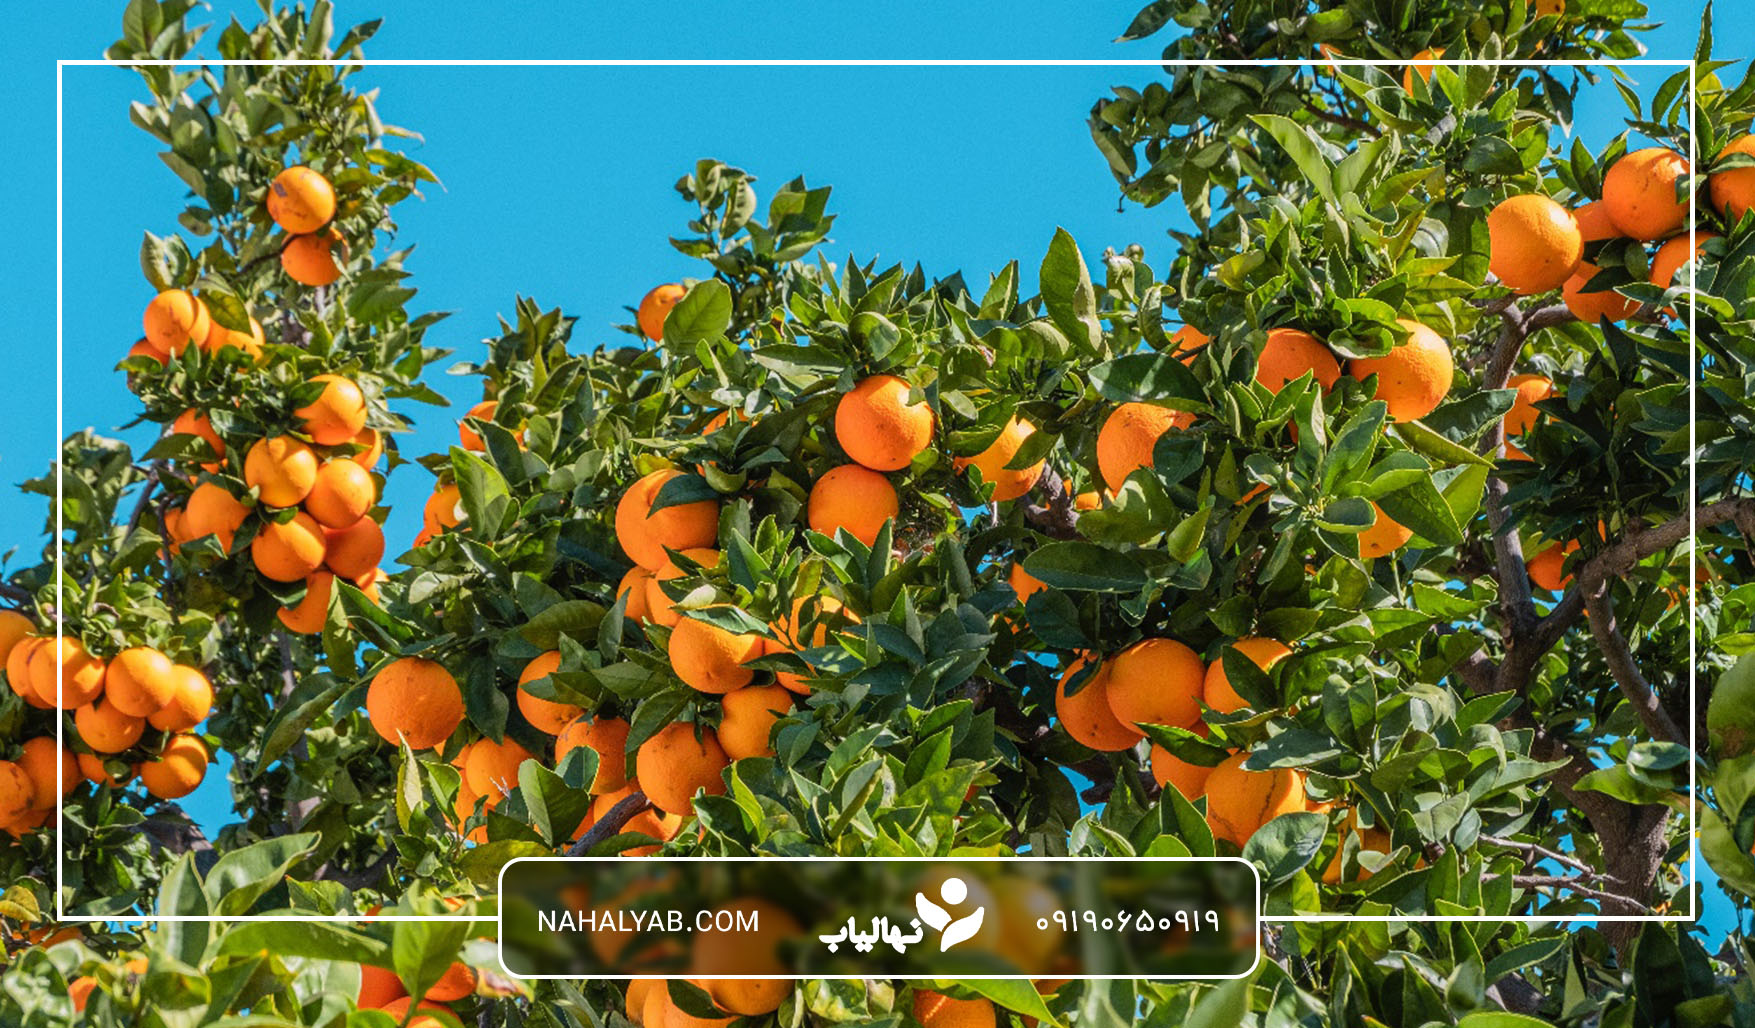 مزایای کود حیوانی برای درخت پرتقال